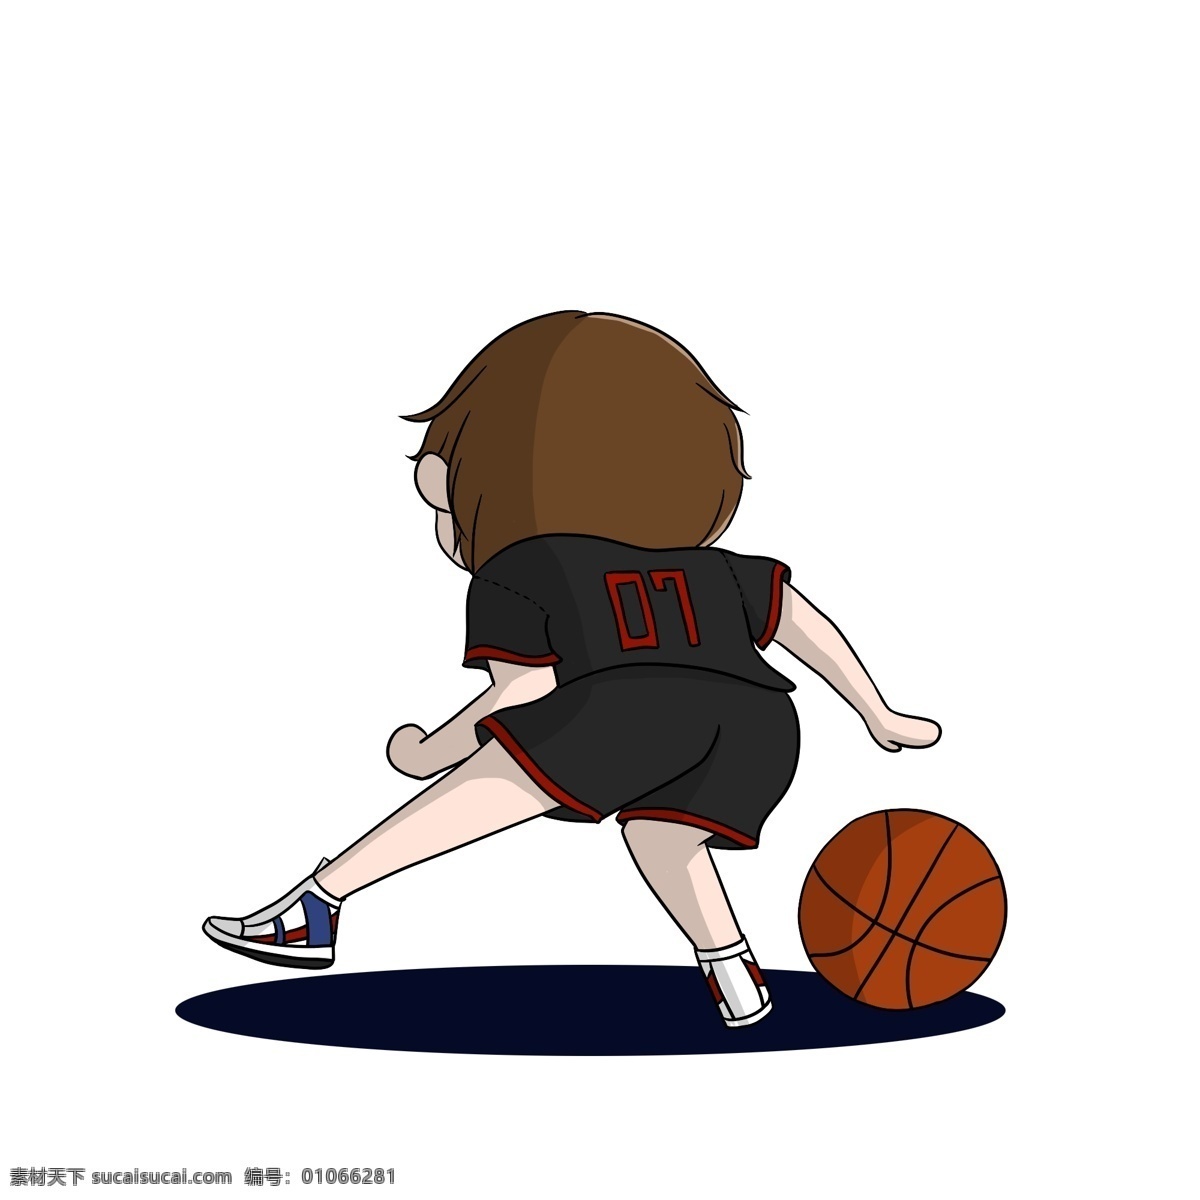 原创 手绘 q 版 人物 篮球 男孩 元素 q版 打篮球的男孩